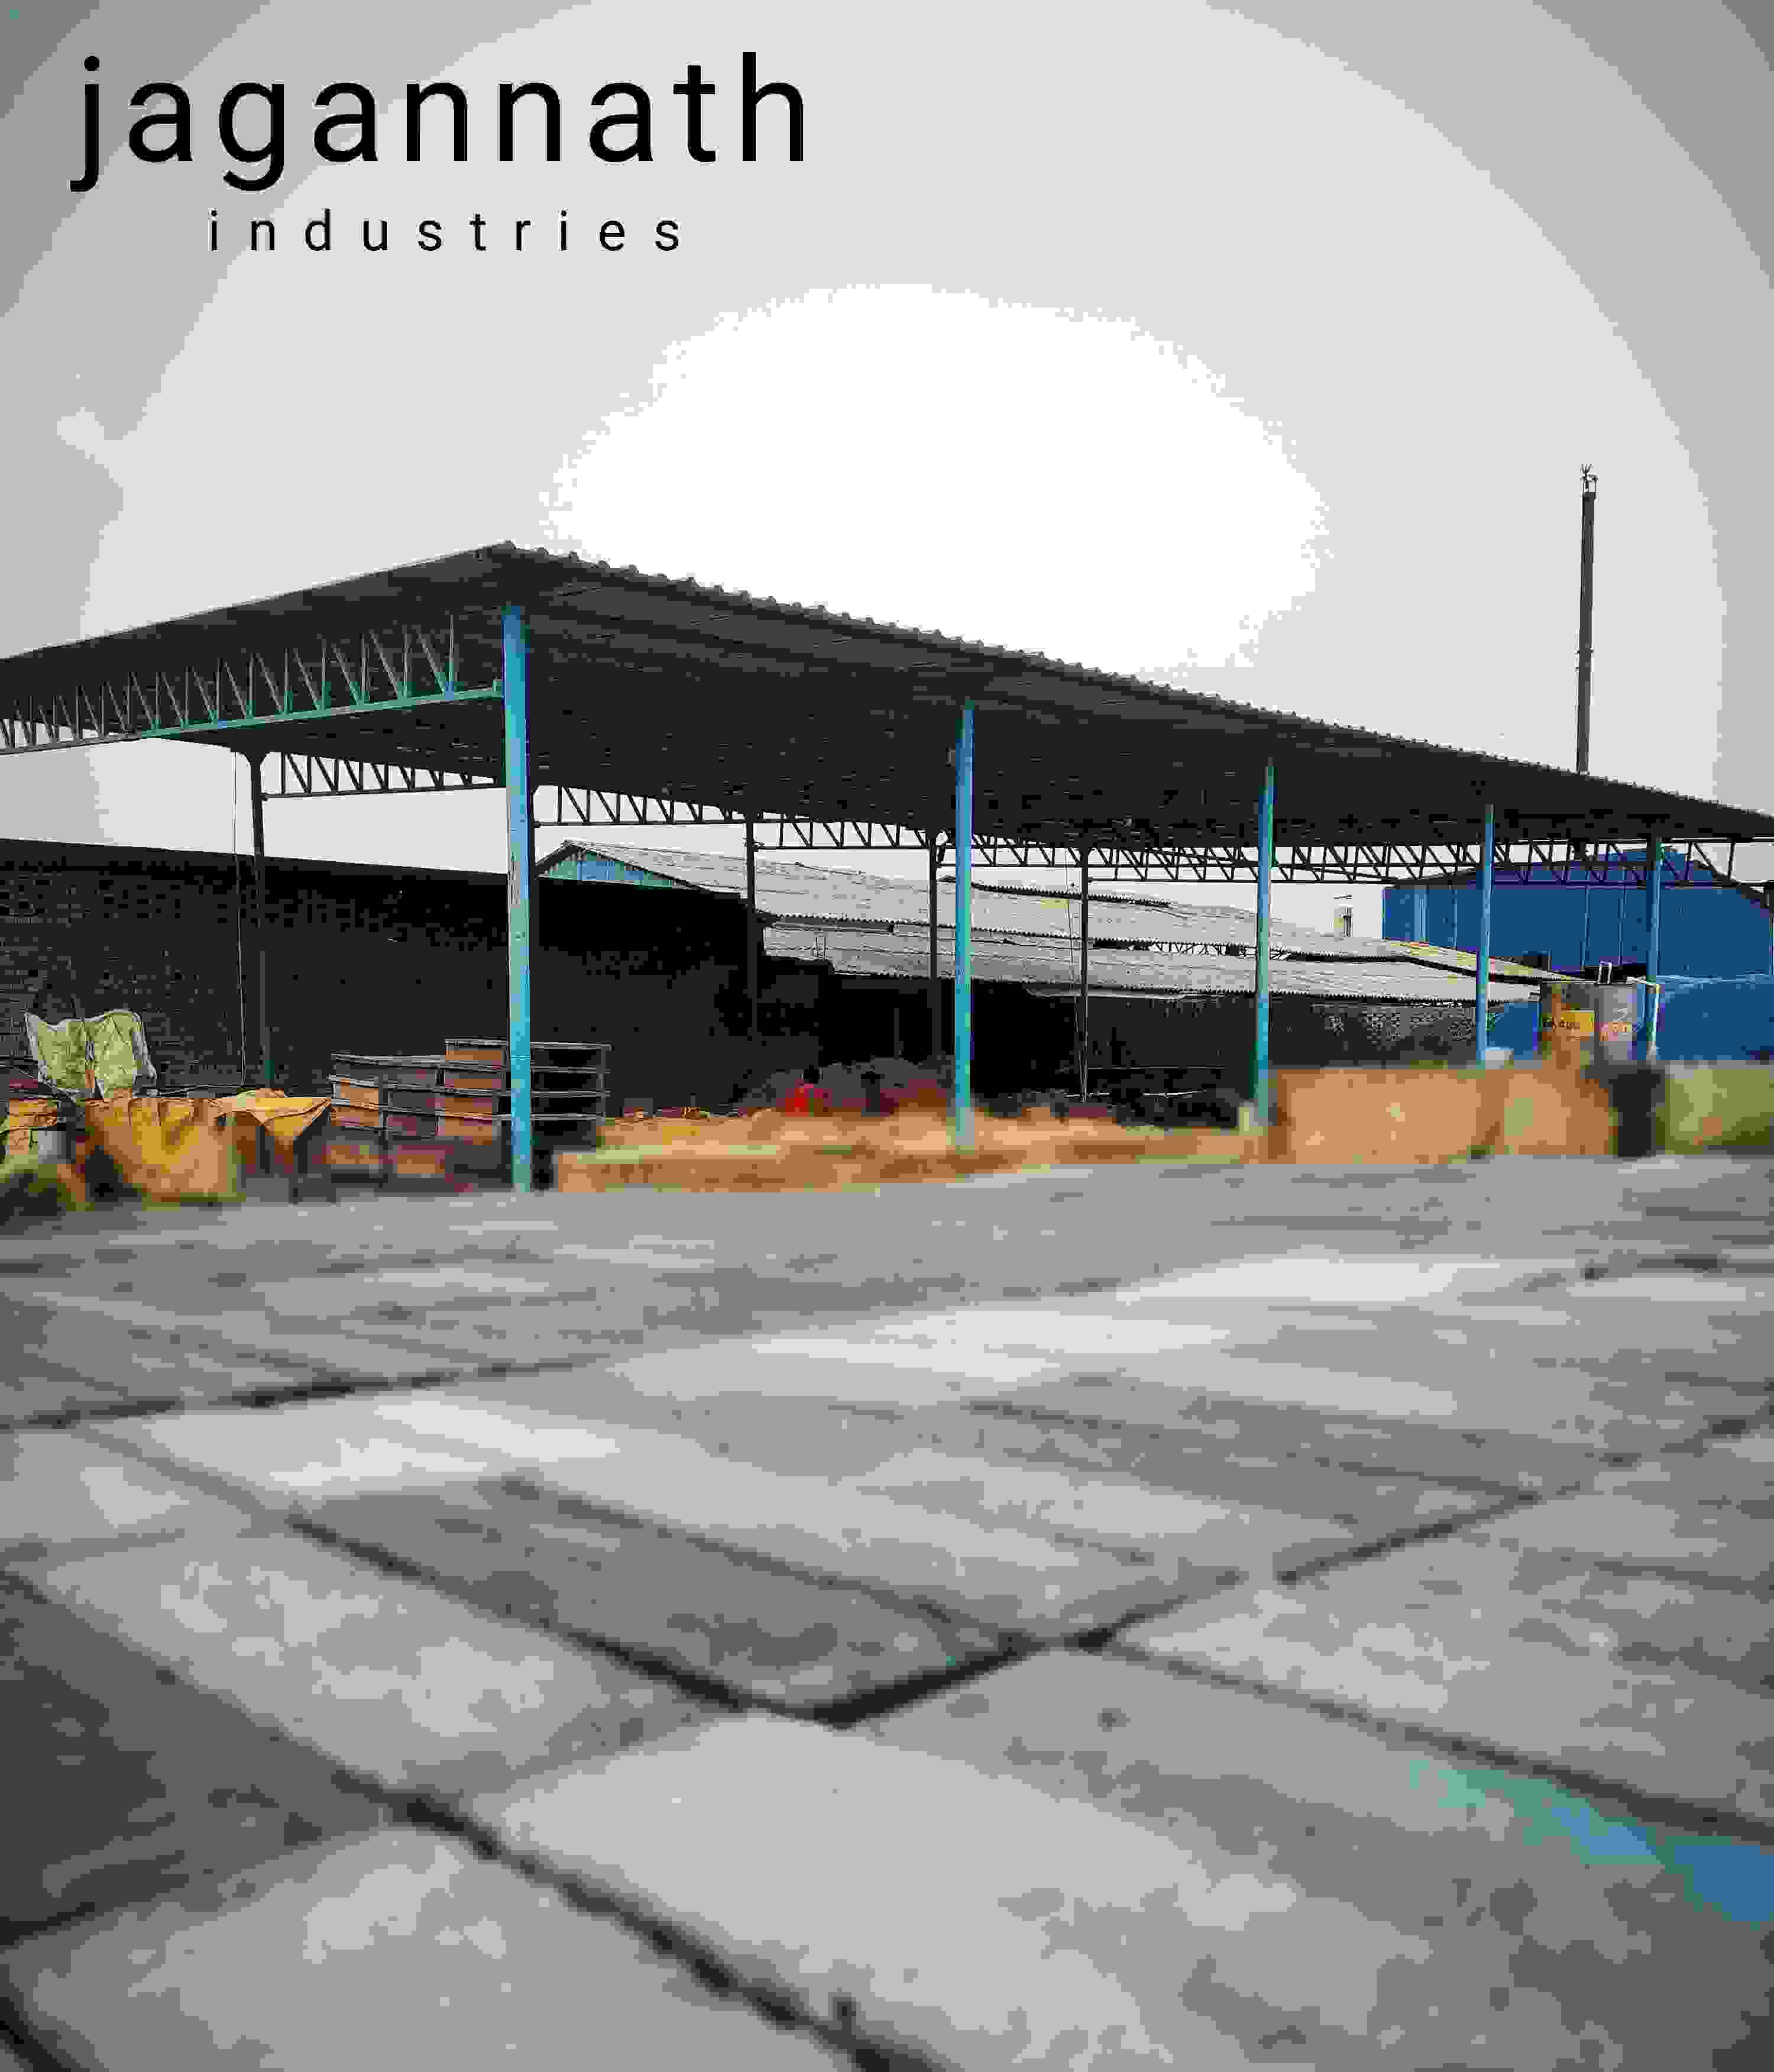 Jagannath industries 